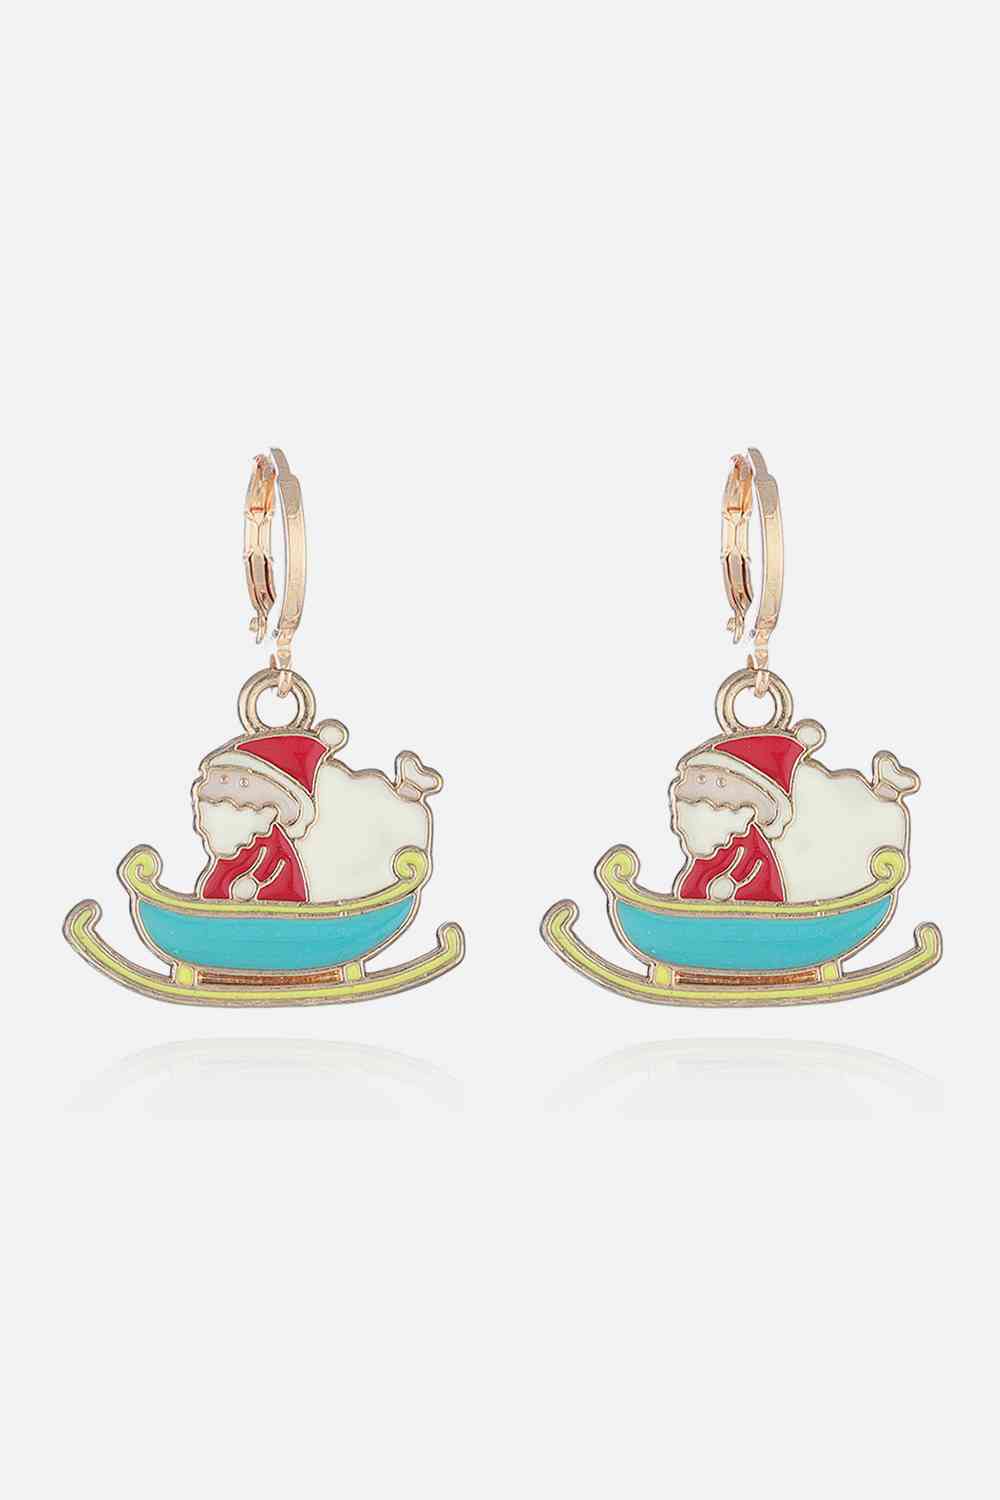 Christmas Theme Alloy Earrings - Style J / One Size - Women’s Jewelry - Earrings - 10 - 2024